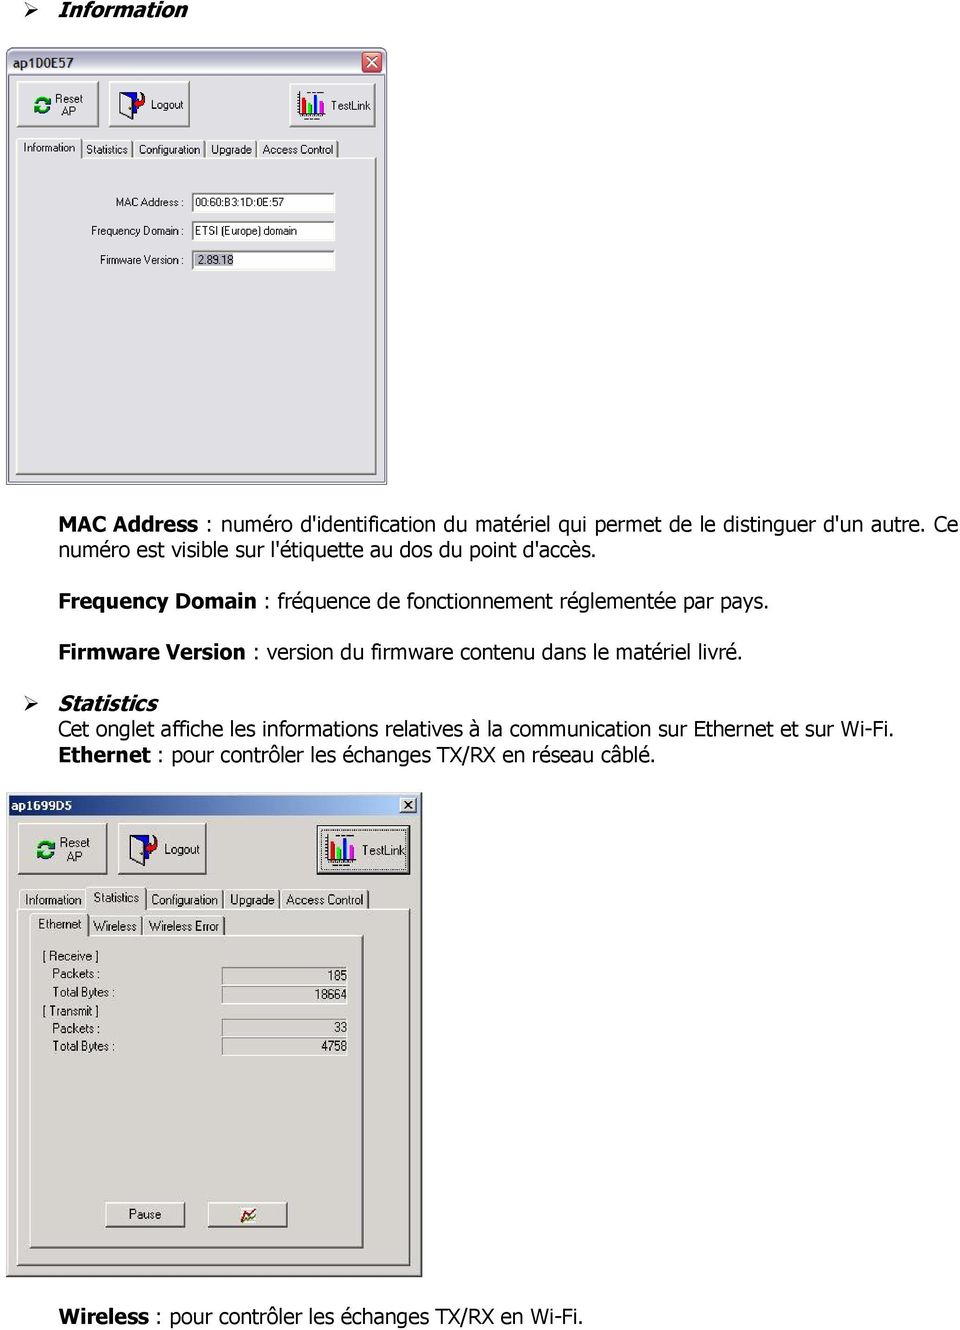 Firmware Version : version du firmware contenu dans le matériel livré.